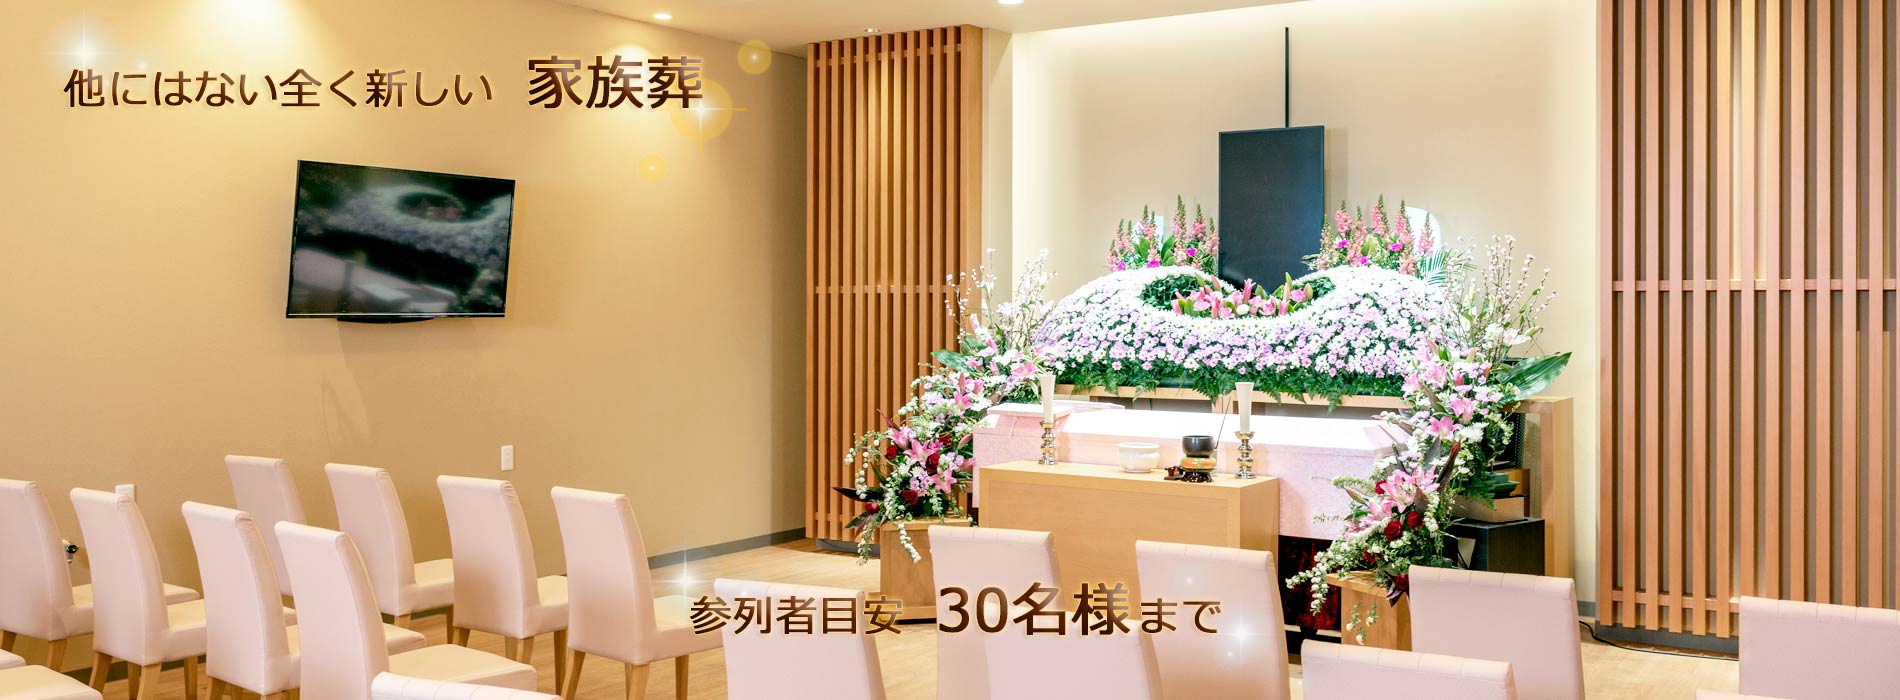 会津若松市の家族葬・葬儀・お葬式のご相談は、365日24時間・神保グループ＜0120-365-594＞が受付しております。